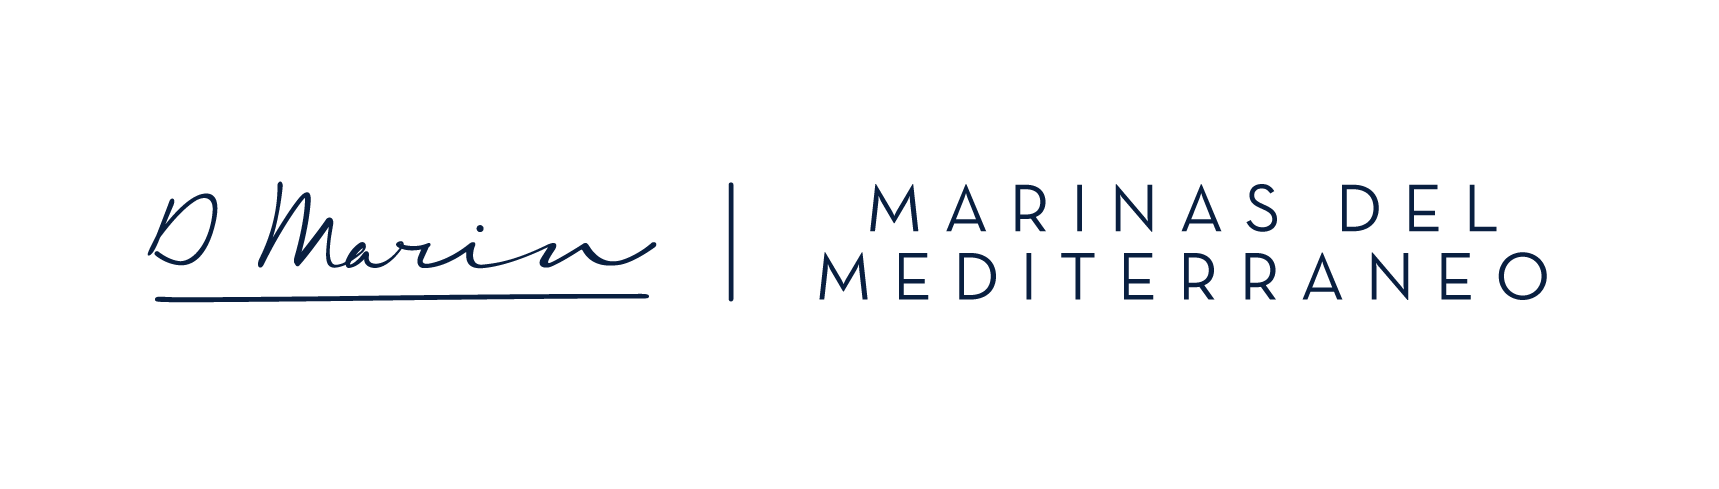 MARINAS DEL MEDITERRANEO D-MARIN